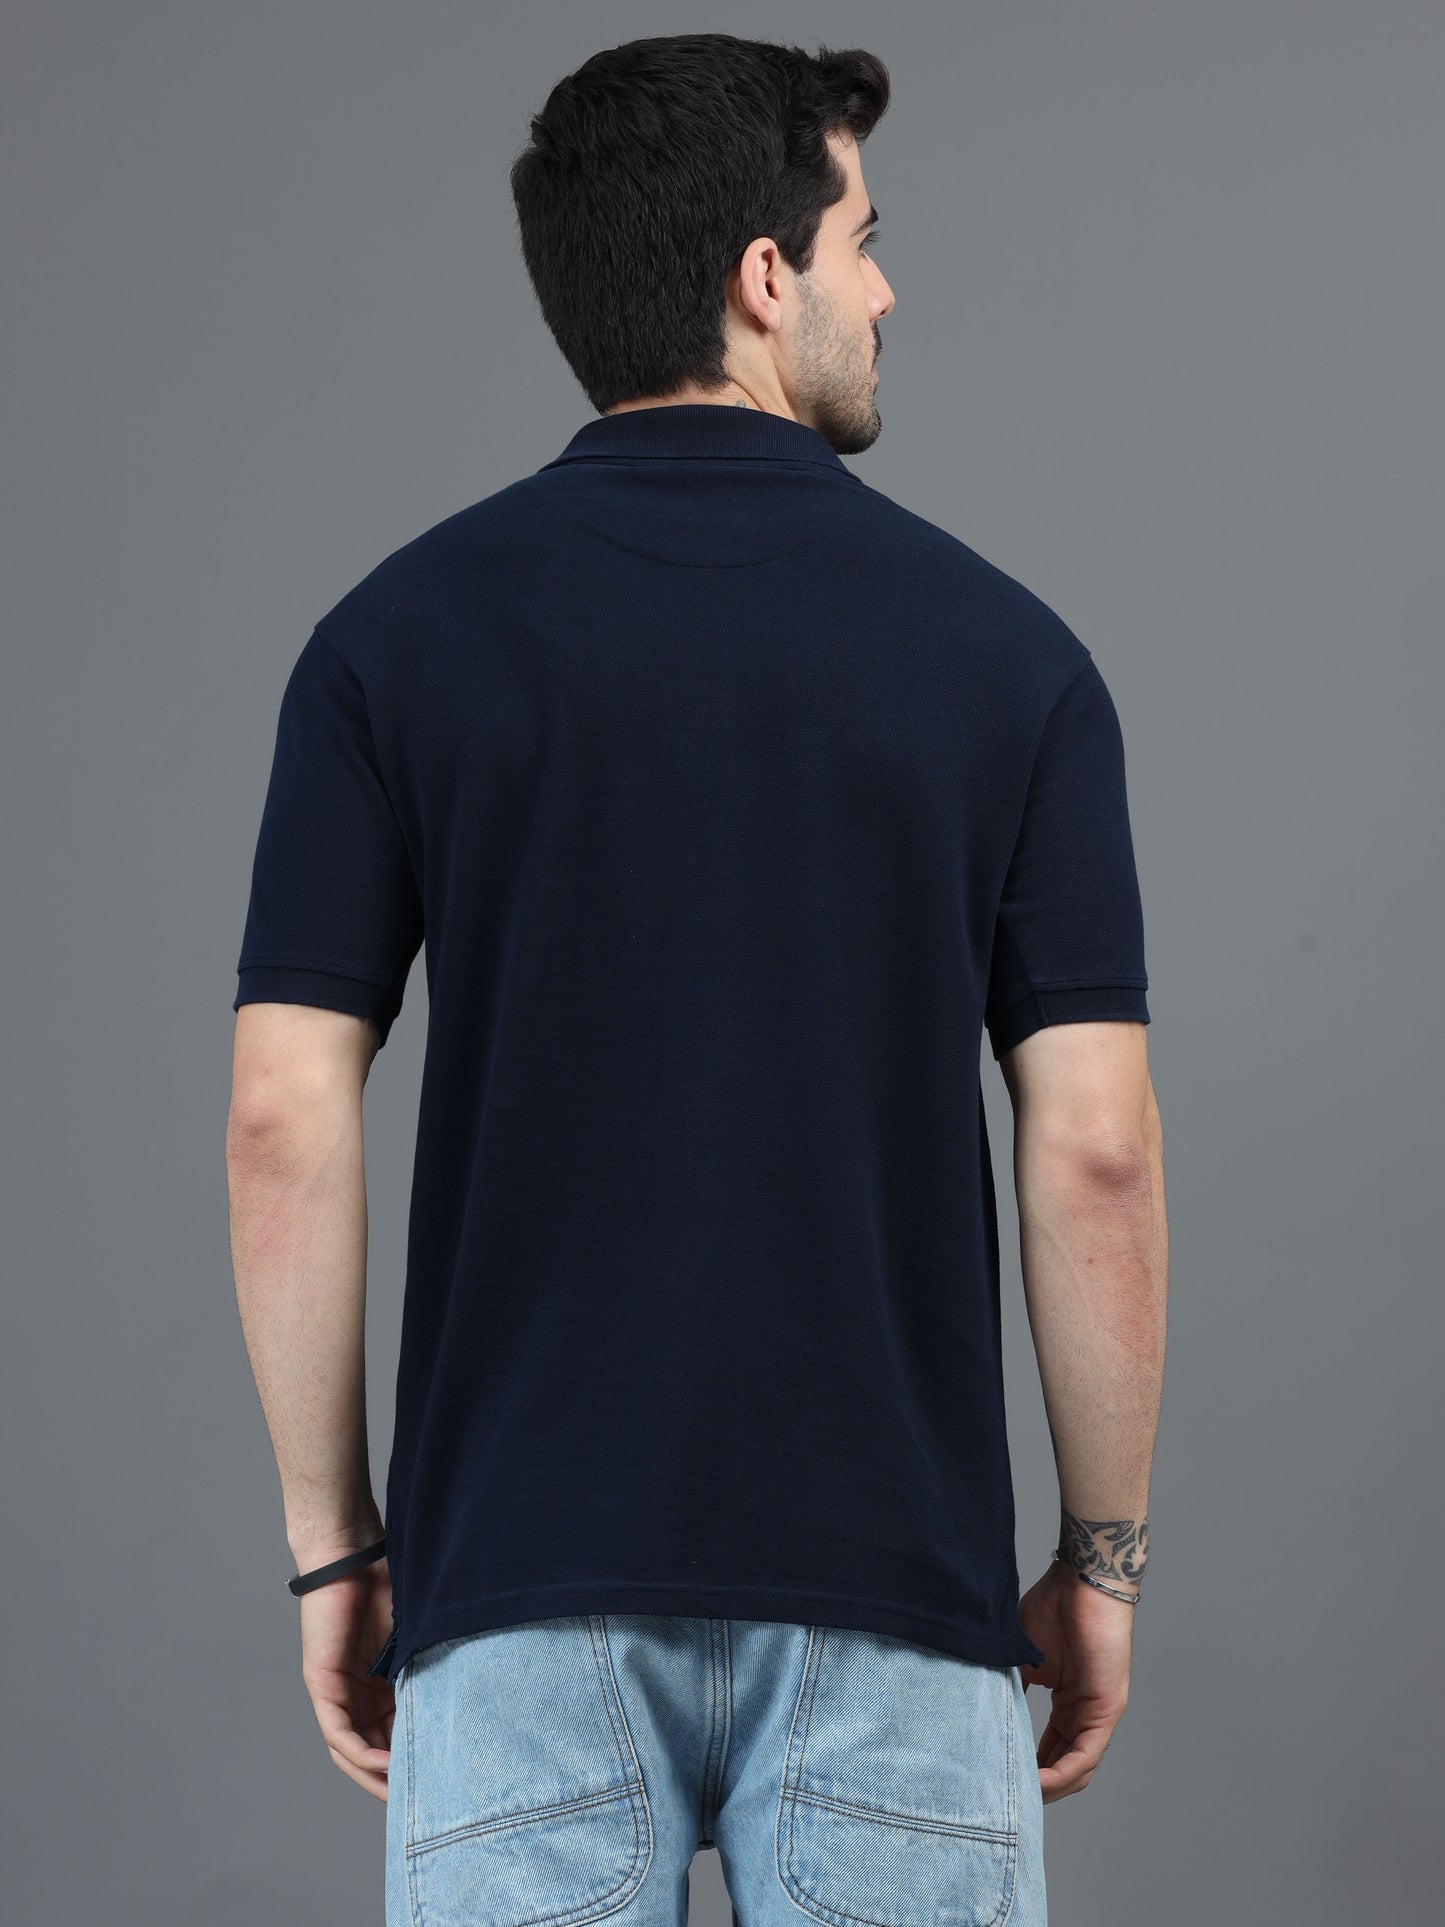 Navy Blue T Shirt for Men